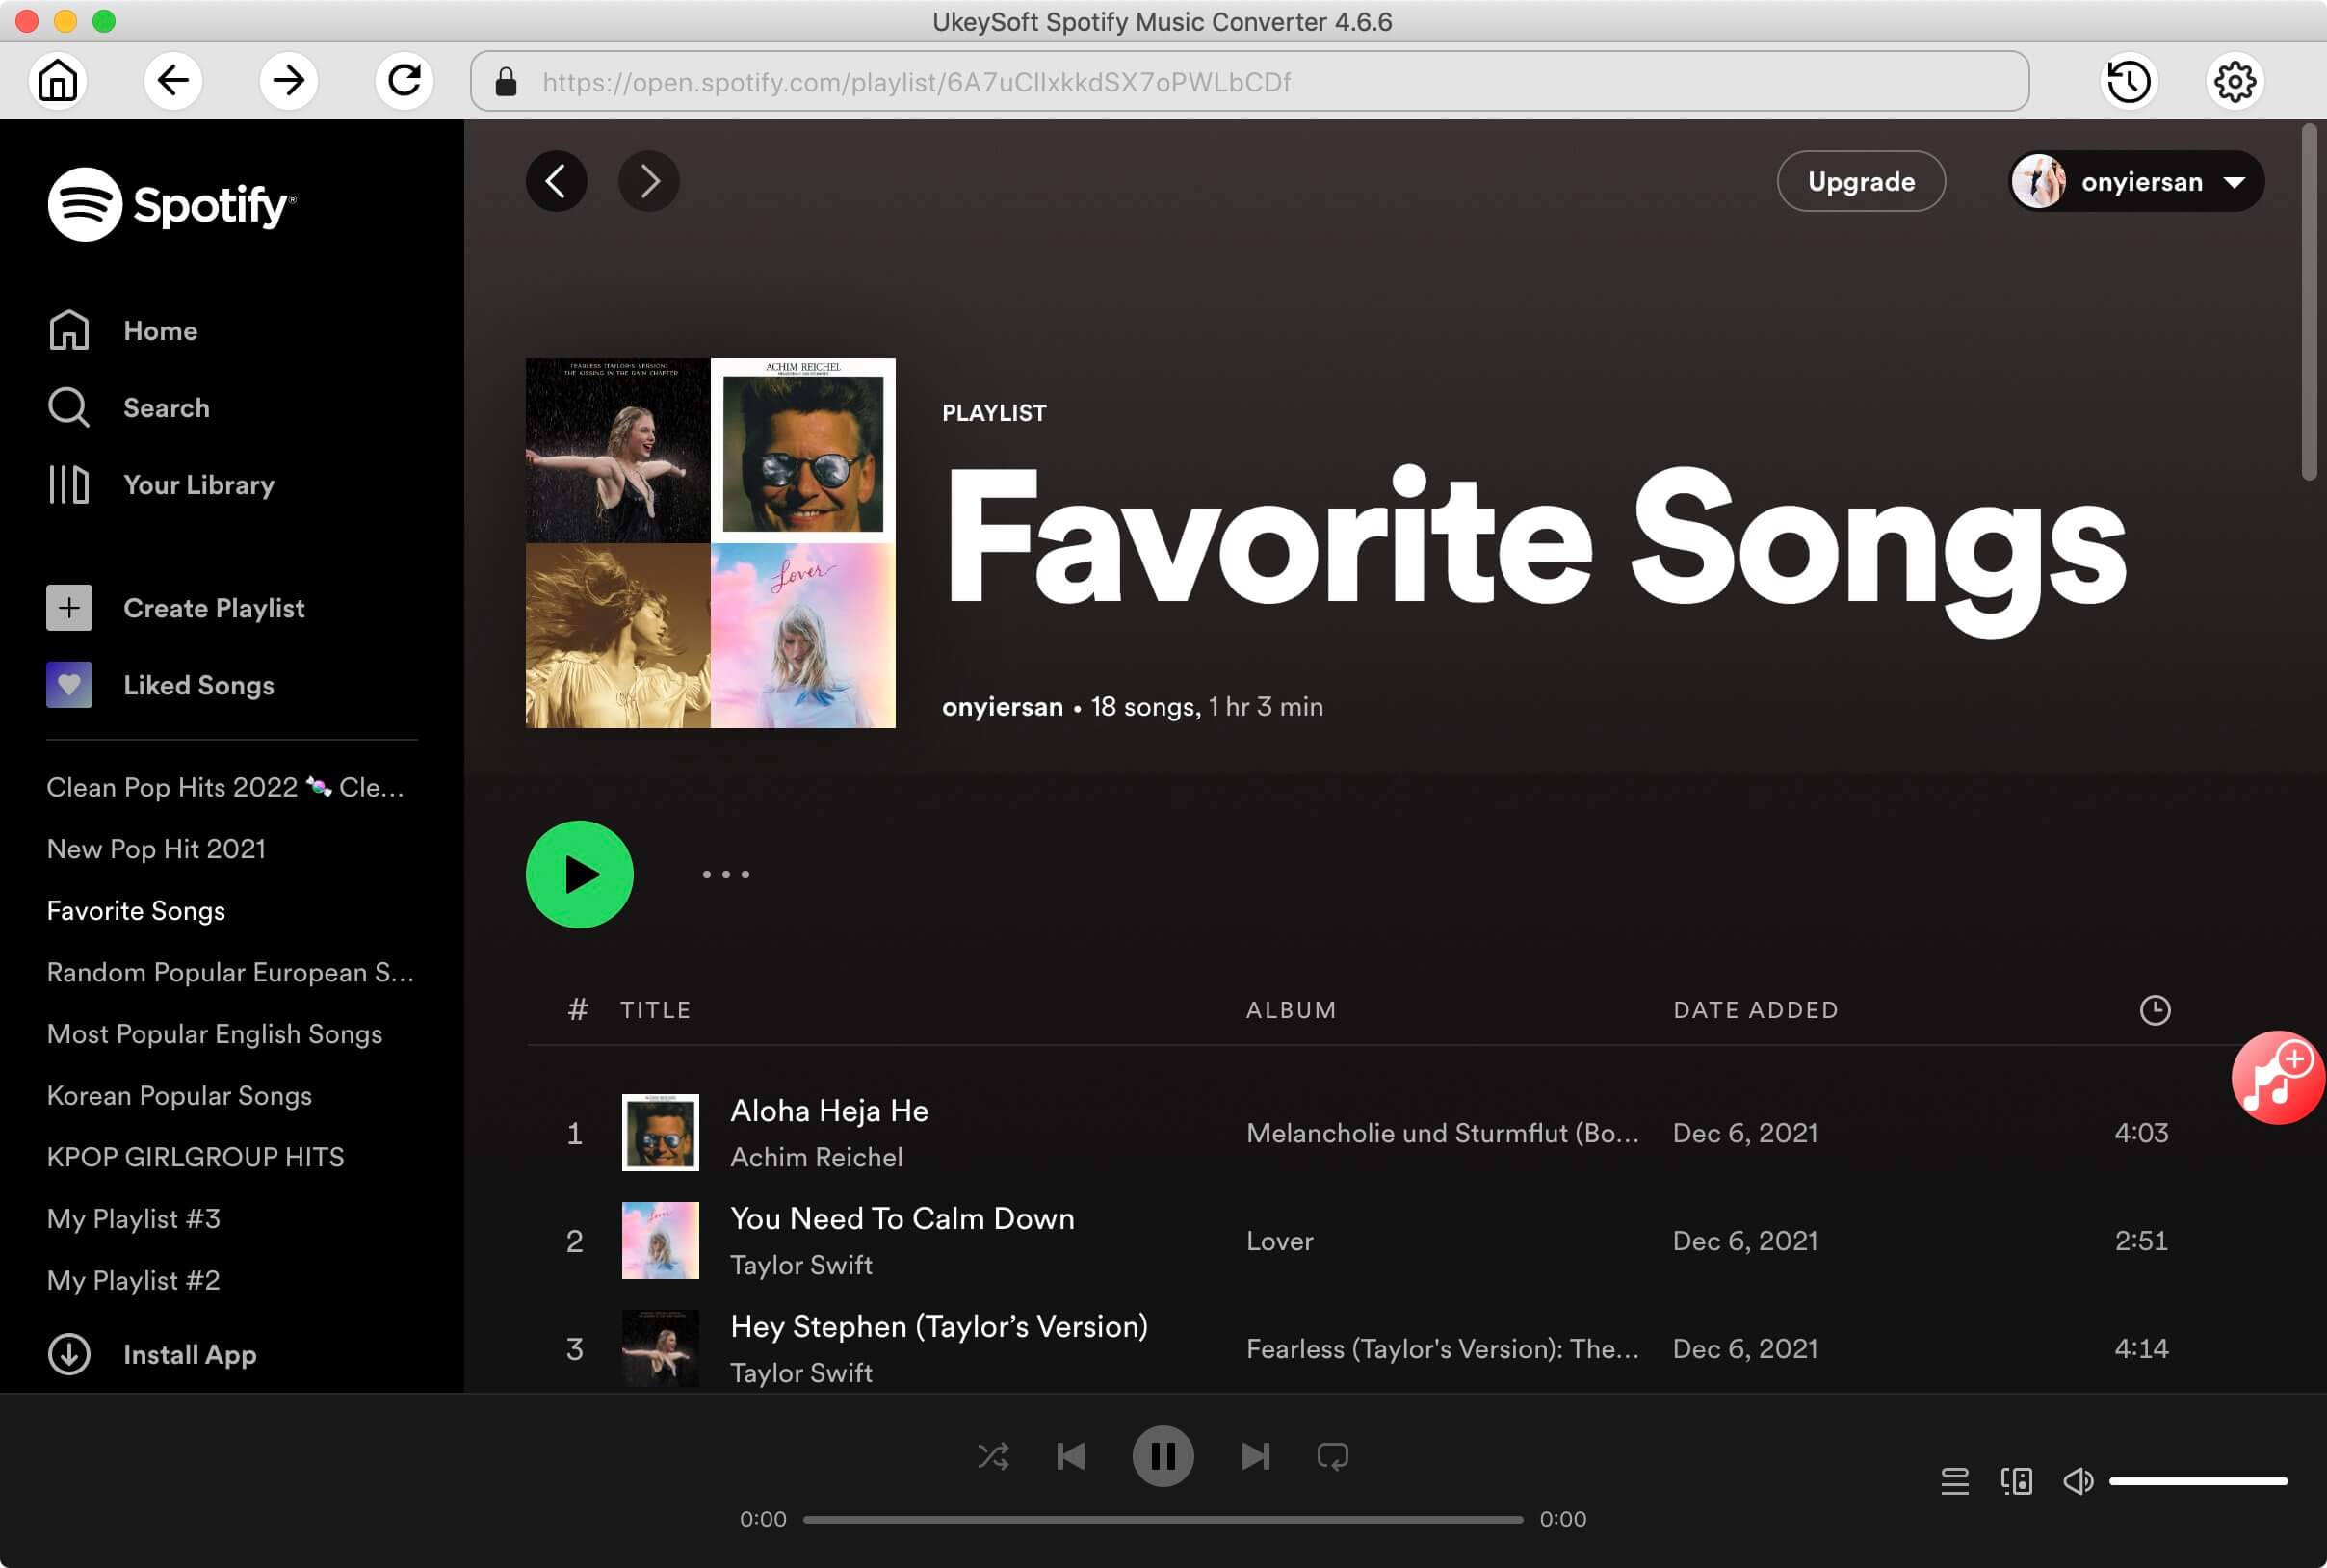 Import Spotify Music to UkeySoft Spotify Converter